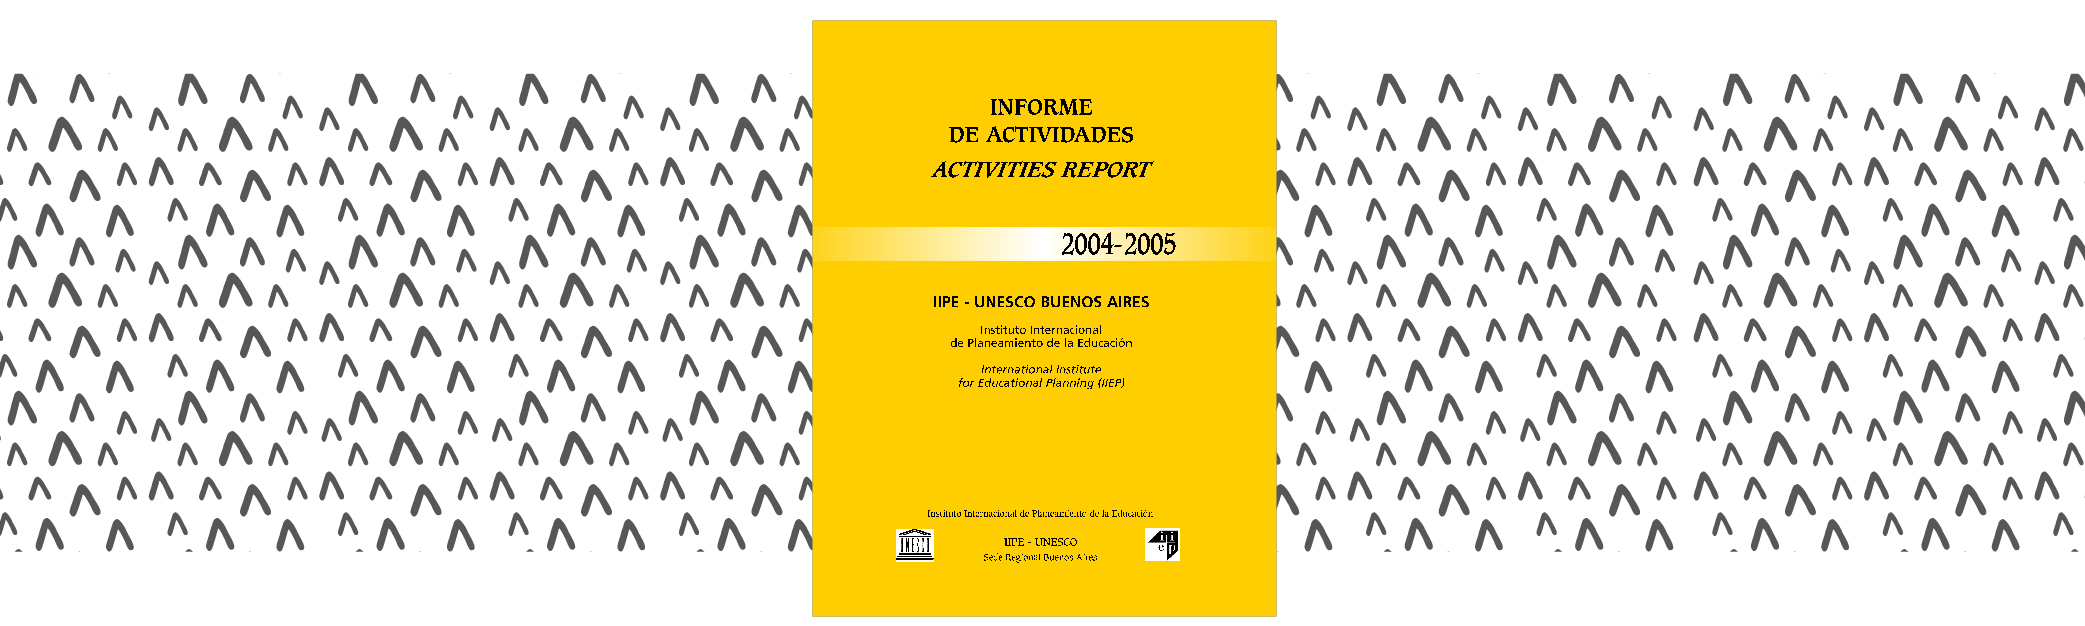 Informe de actividades 2004